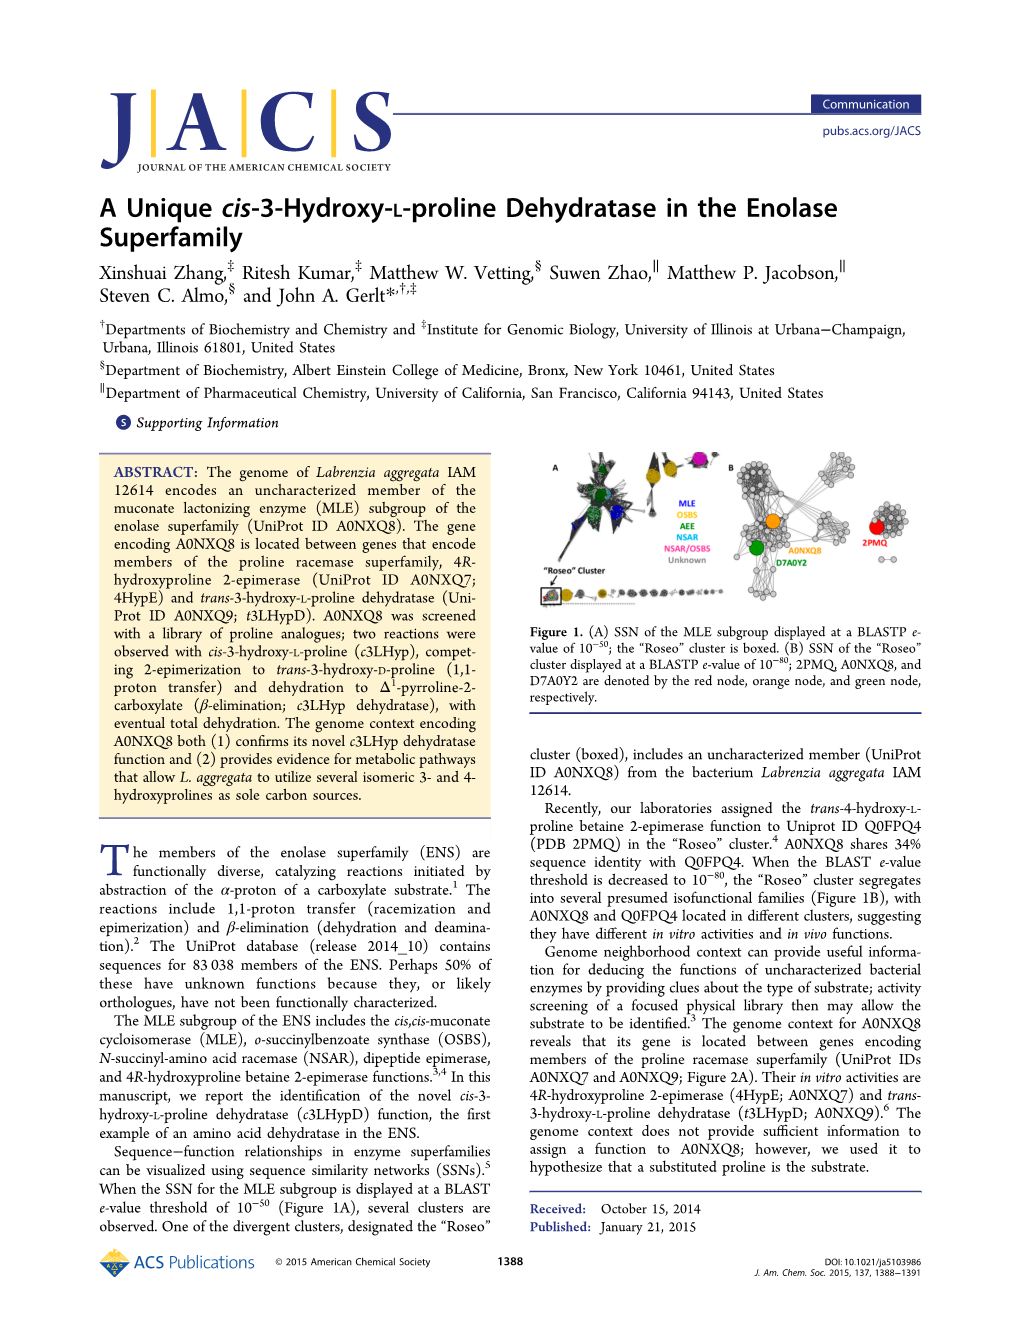 16. a Unique Cis-3-Hydroxy-L-Proline Dehydratase in the Enolase Superfamily